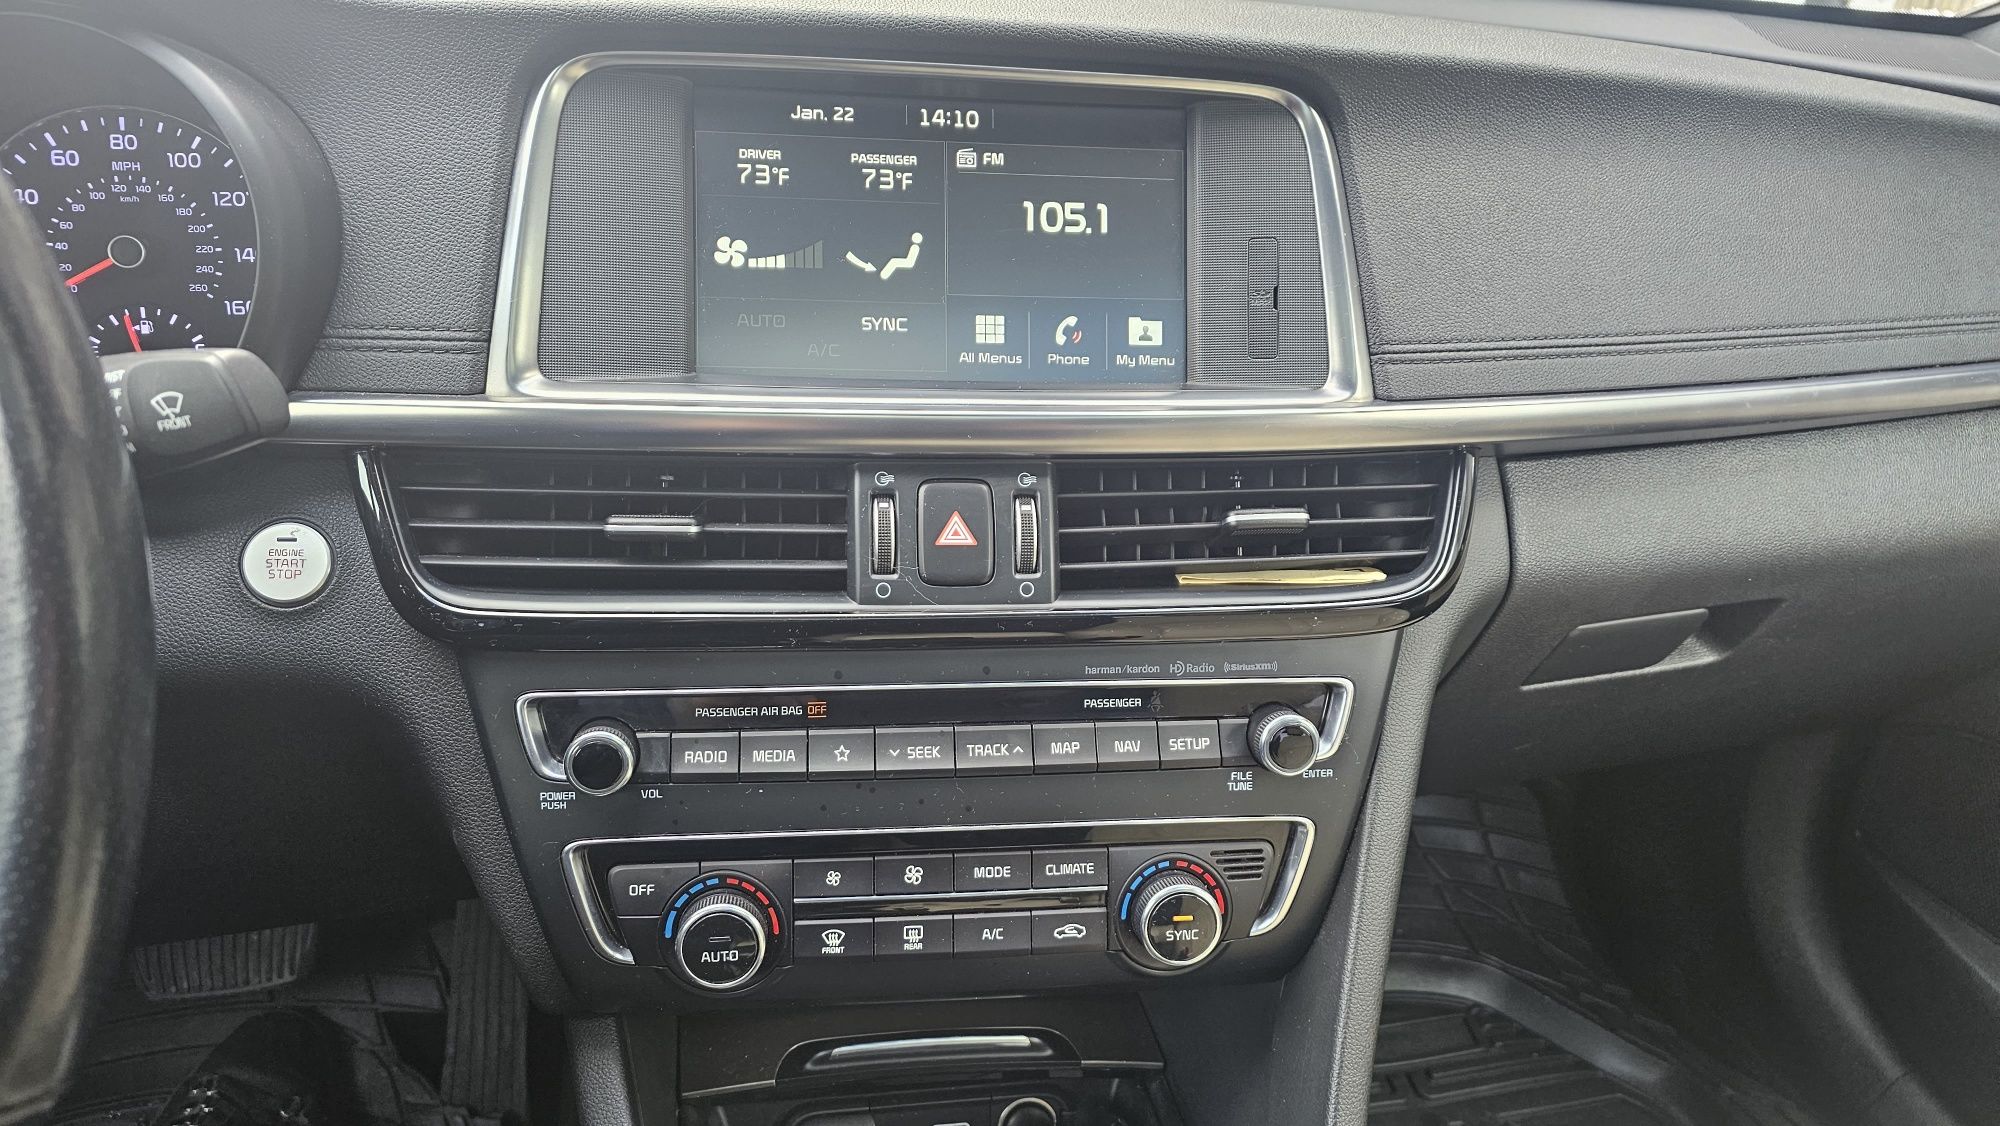 Kia Optima SXL 2018, 2.0 Turbo